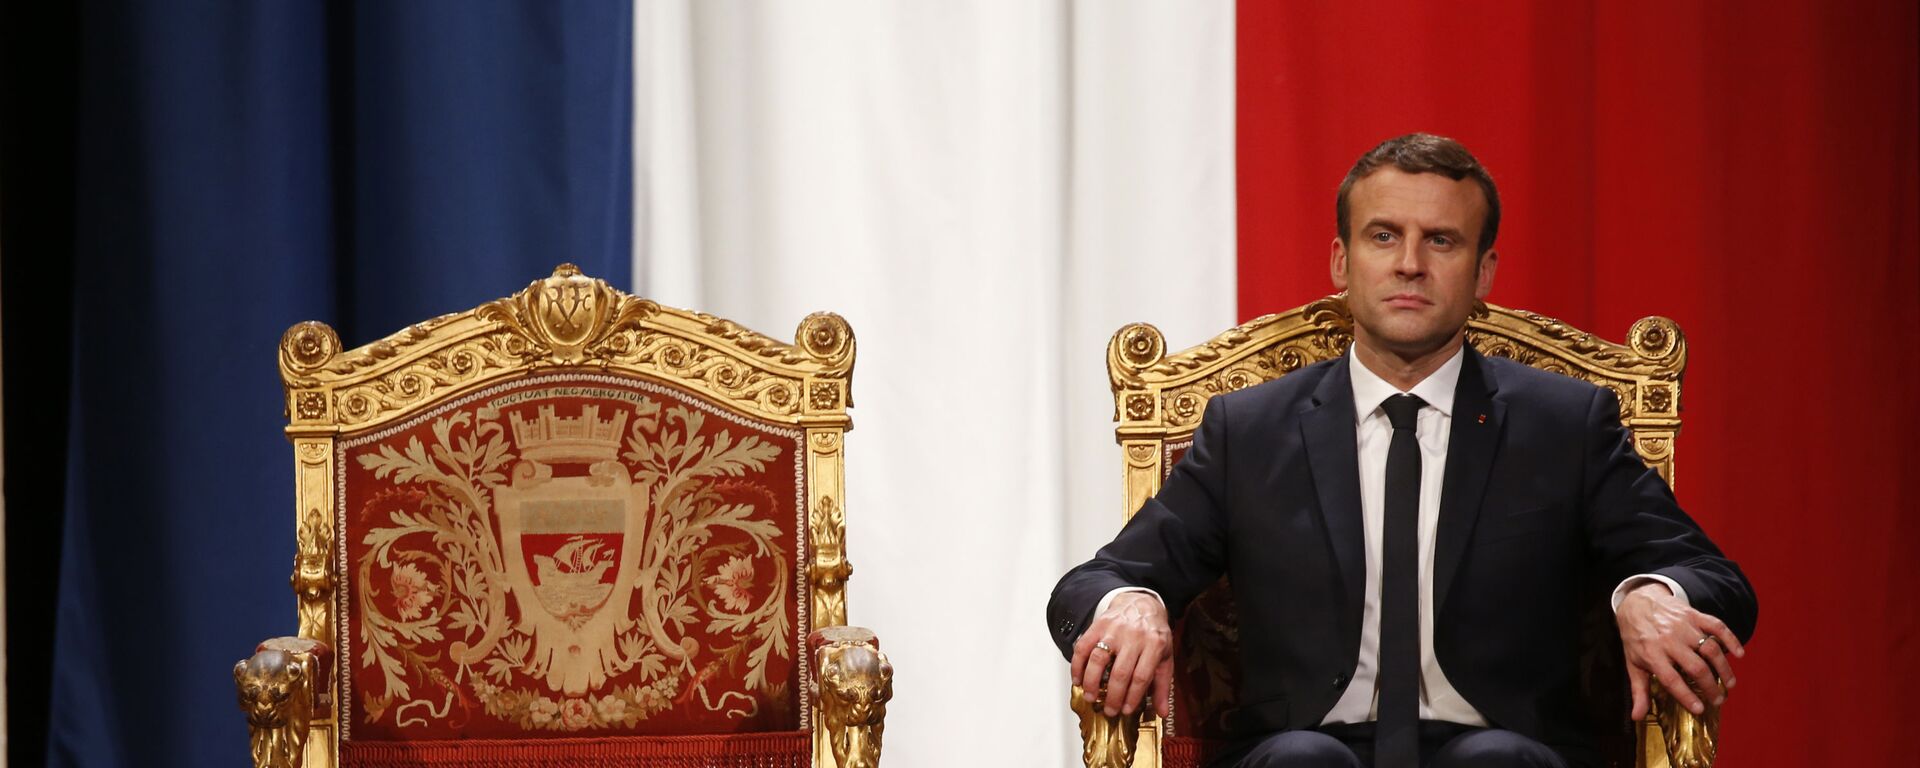 Le Président de la République française Emmanuel Macron à l'Hôtel de Ville de Paris, mai 2017 - Sputnik Afrique, 1920, 22.04.2021